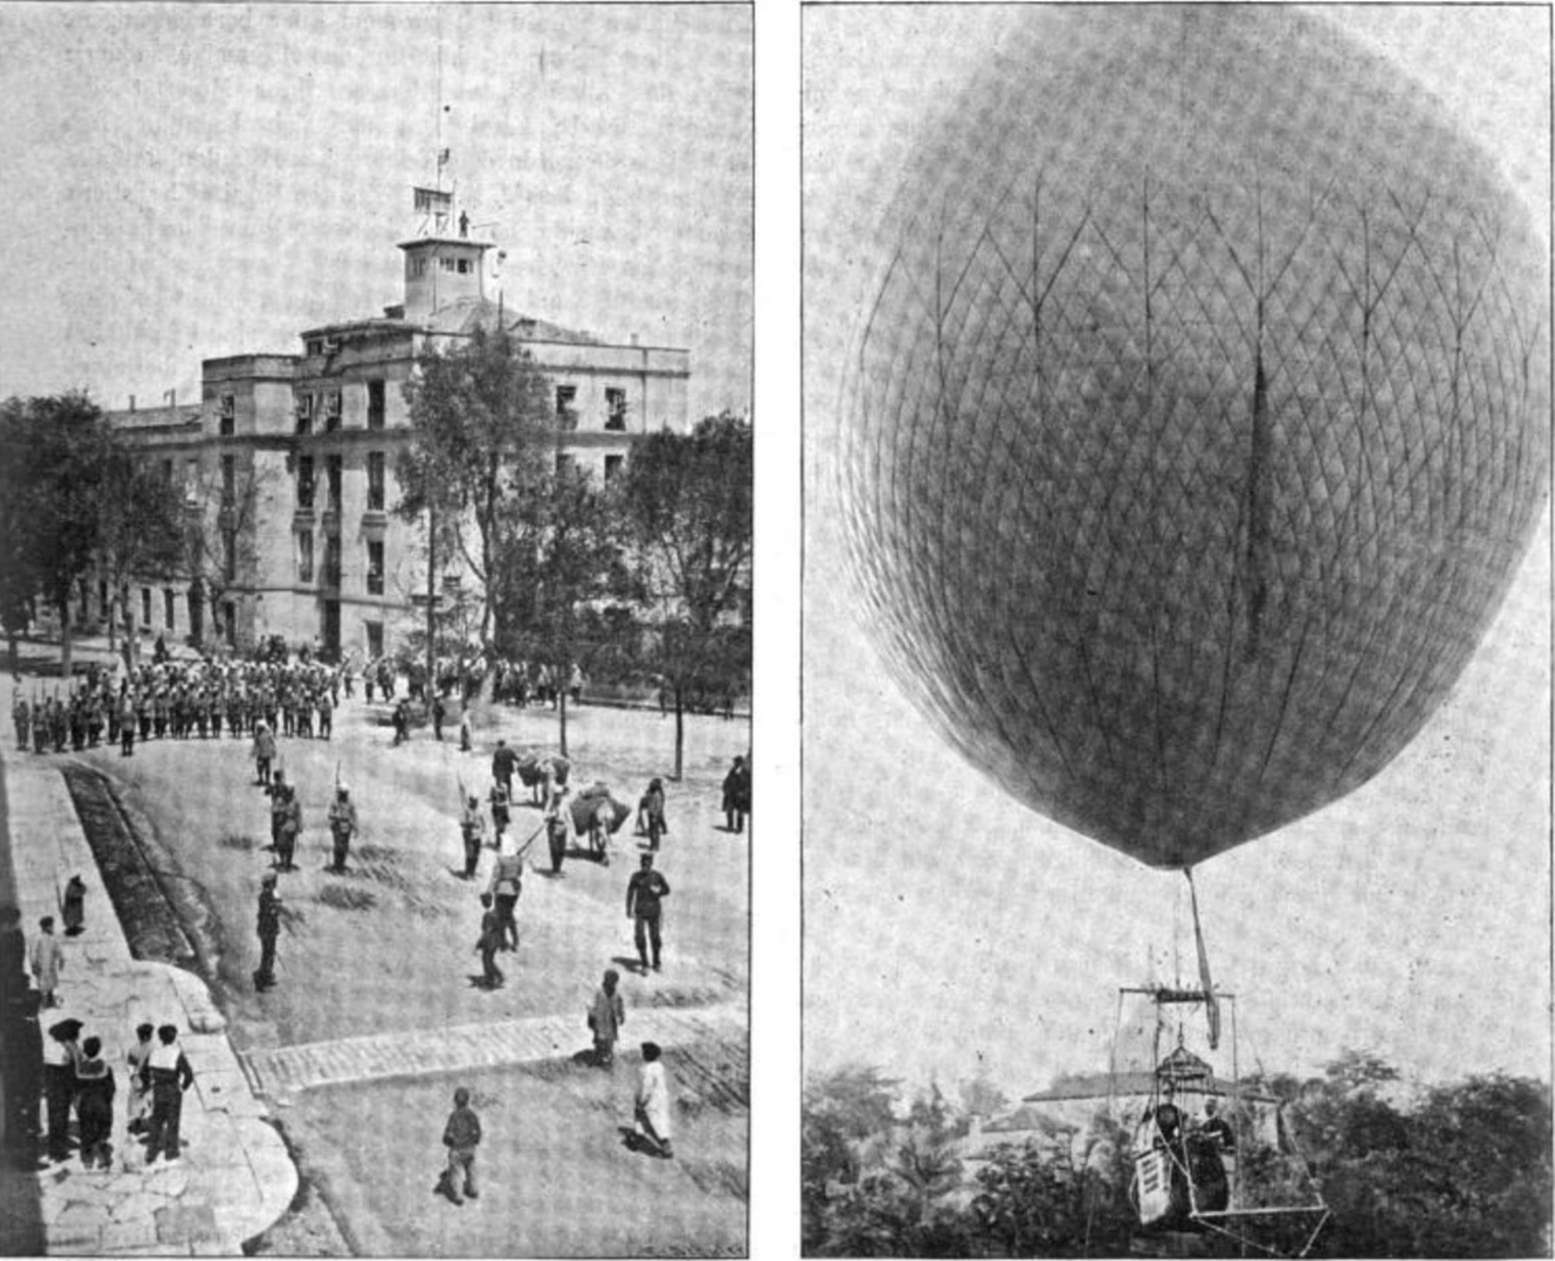 Luftschiffe - Ballonfahrten - Zeppeline - Aeronautik - Aviation - Geschichte der Luftfahrt 1901